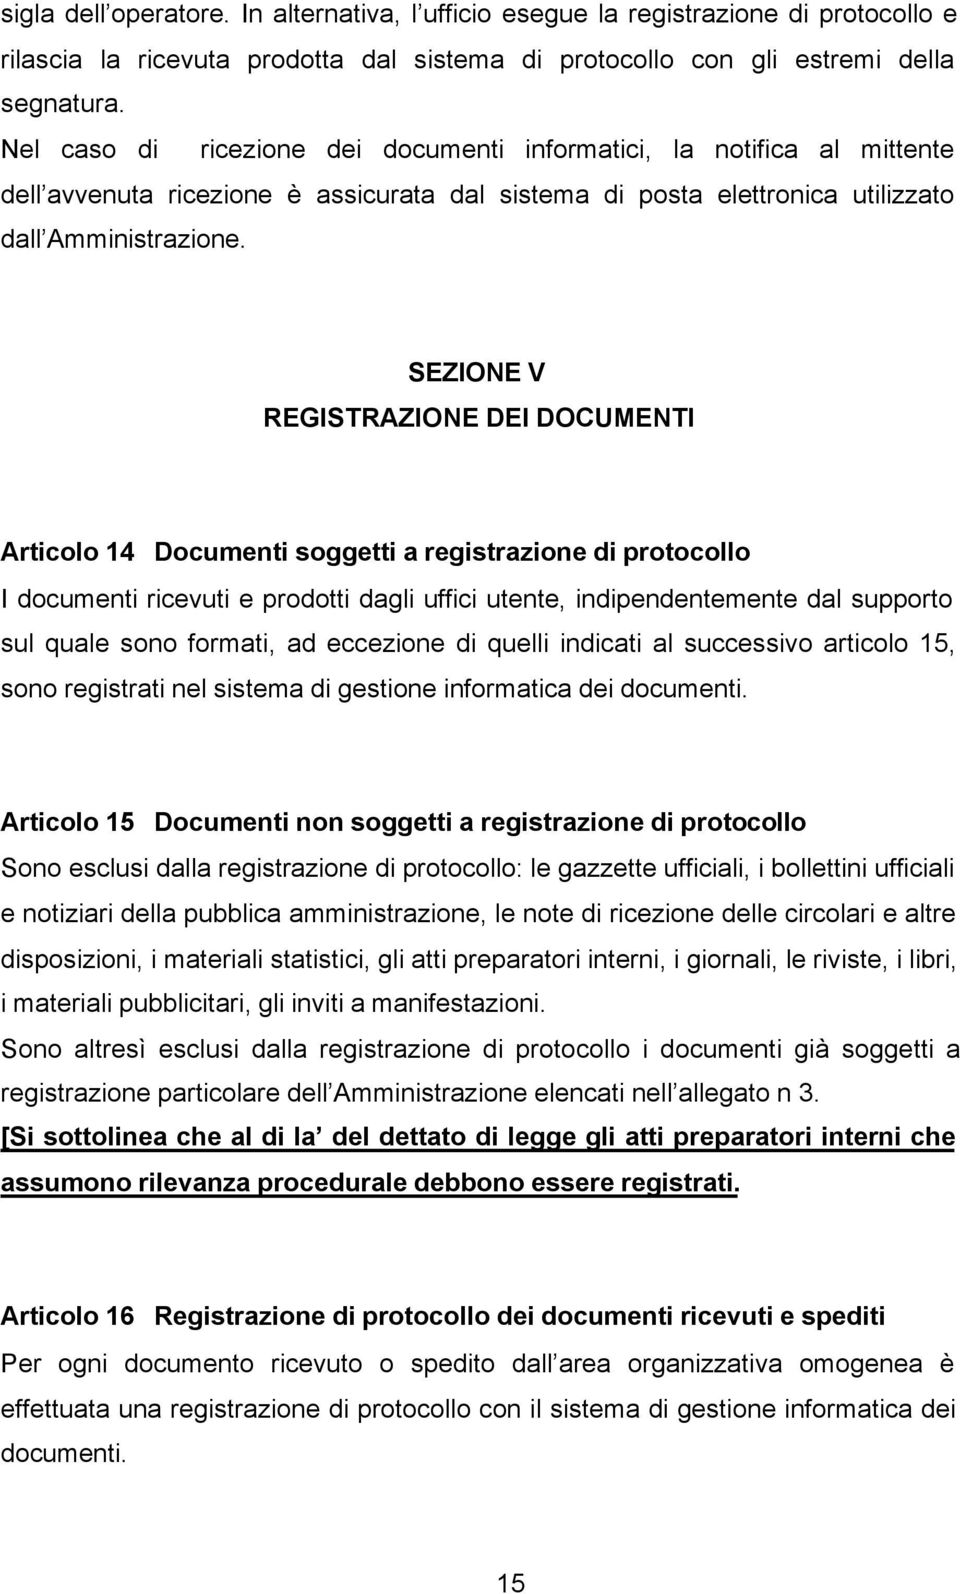 SEZIONE V REGISTRAZIONE DEI DOCUMENTI Articolo 14 Documenti soggetti a registrazione di protocollo I documenti ricevuti e prodotti dagli uffici utente, indipendentemente dal supporto sul quale sono